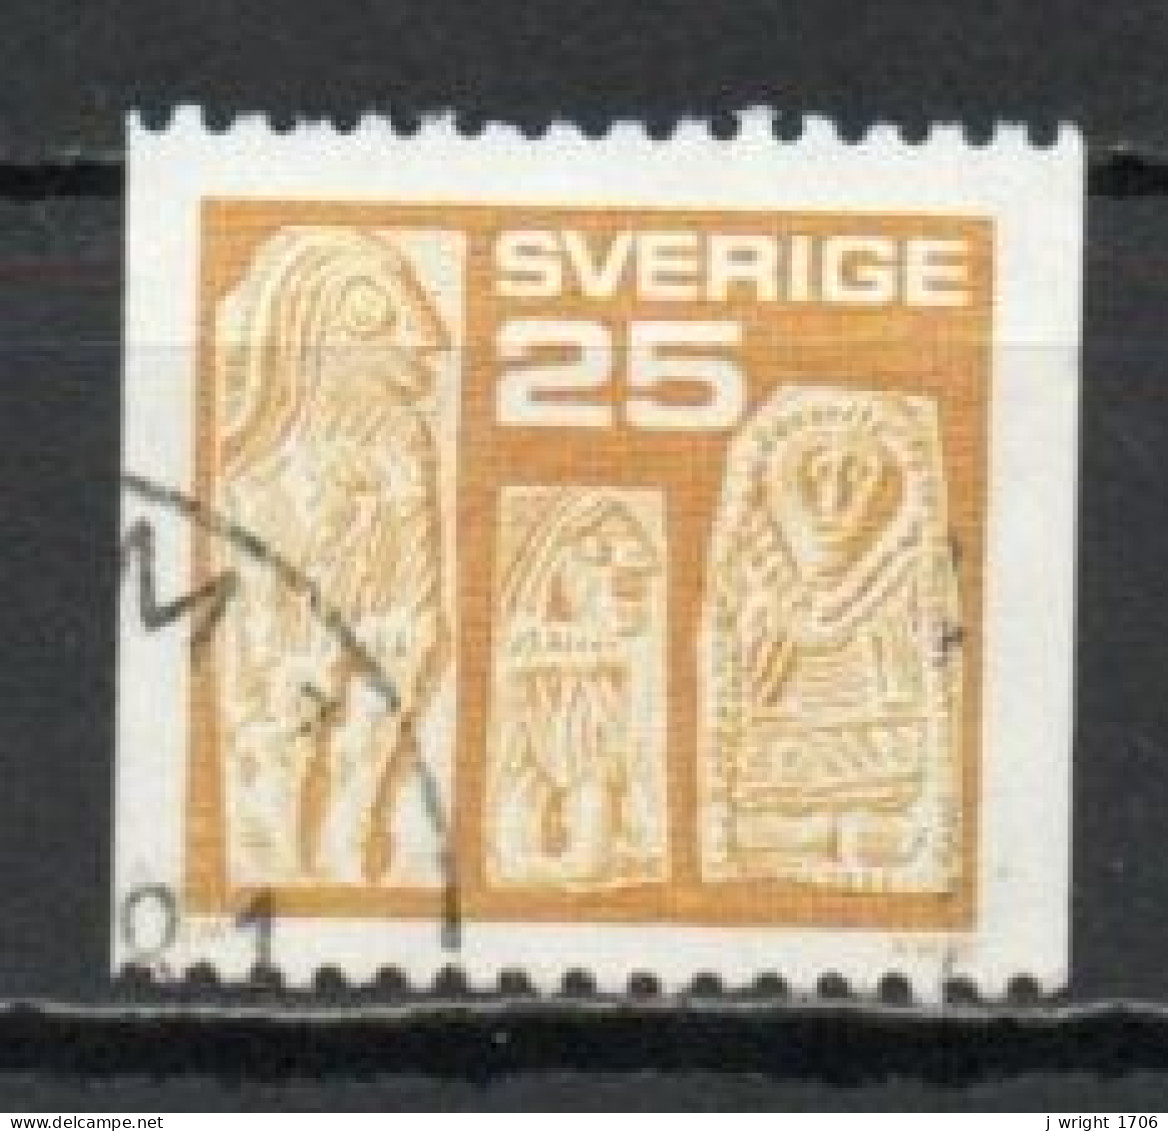 Sweden, 1975, Gold Figures, 25ö, USED - Usados